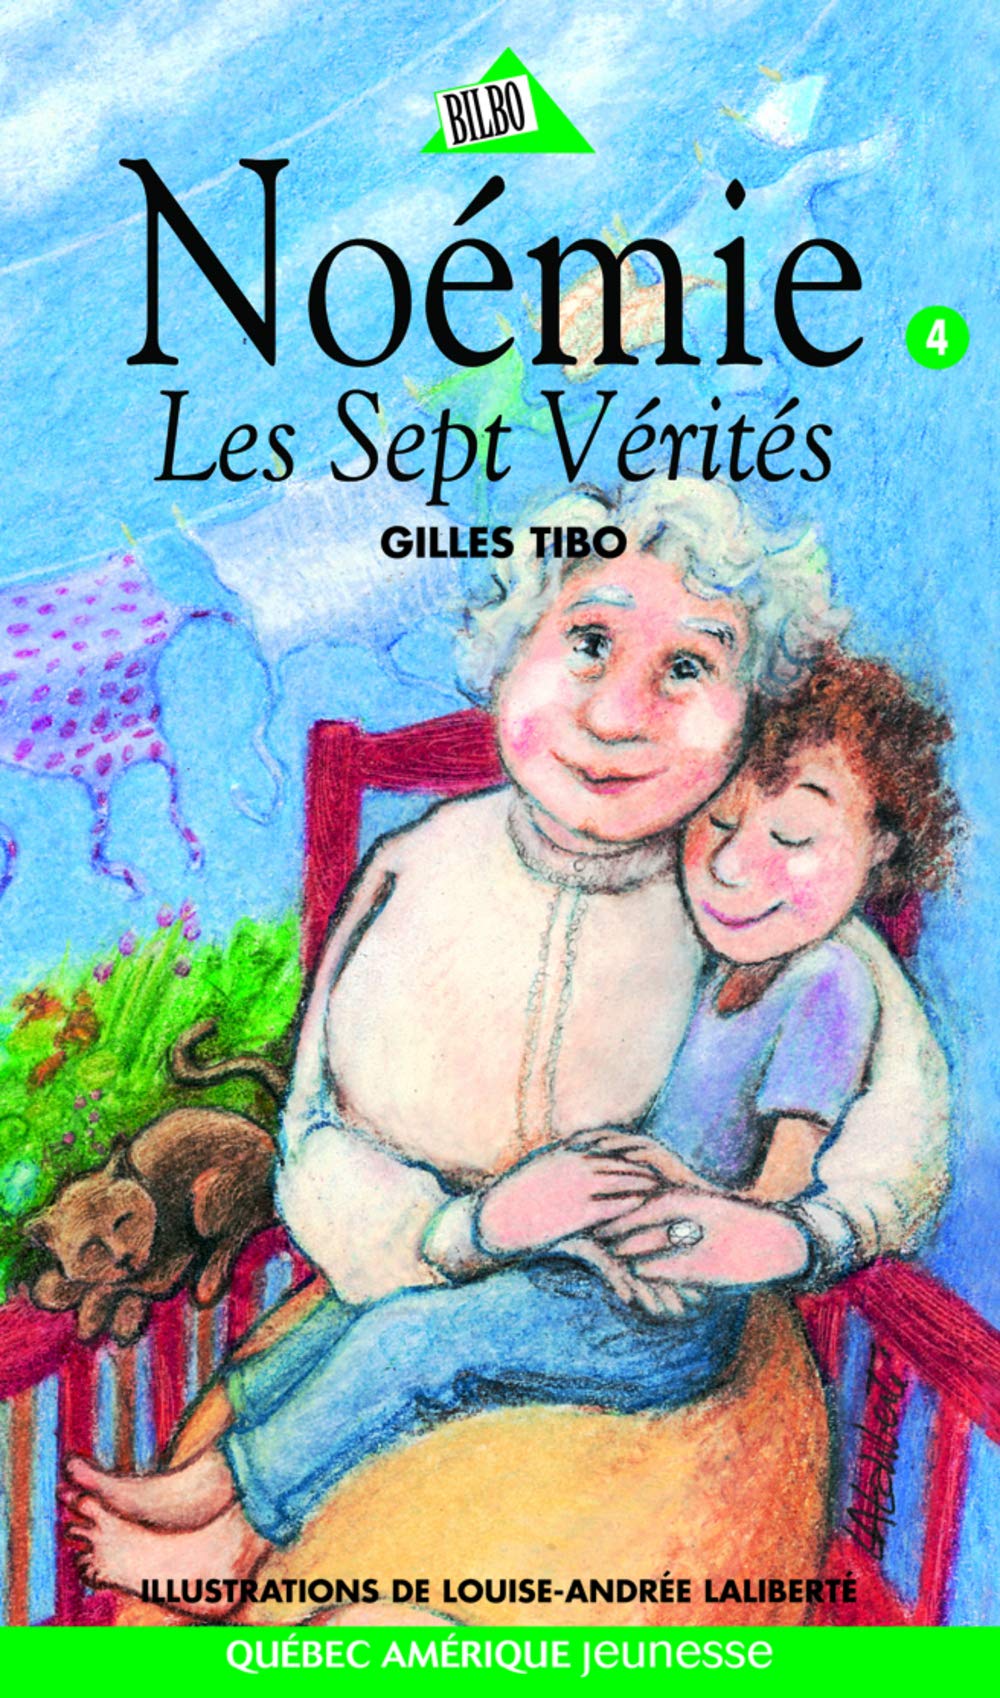 Noémie # 4 : Les sept vérités - Gilles Tibo